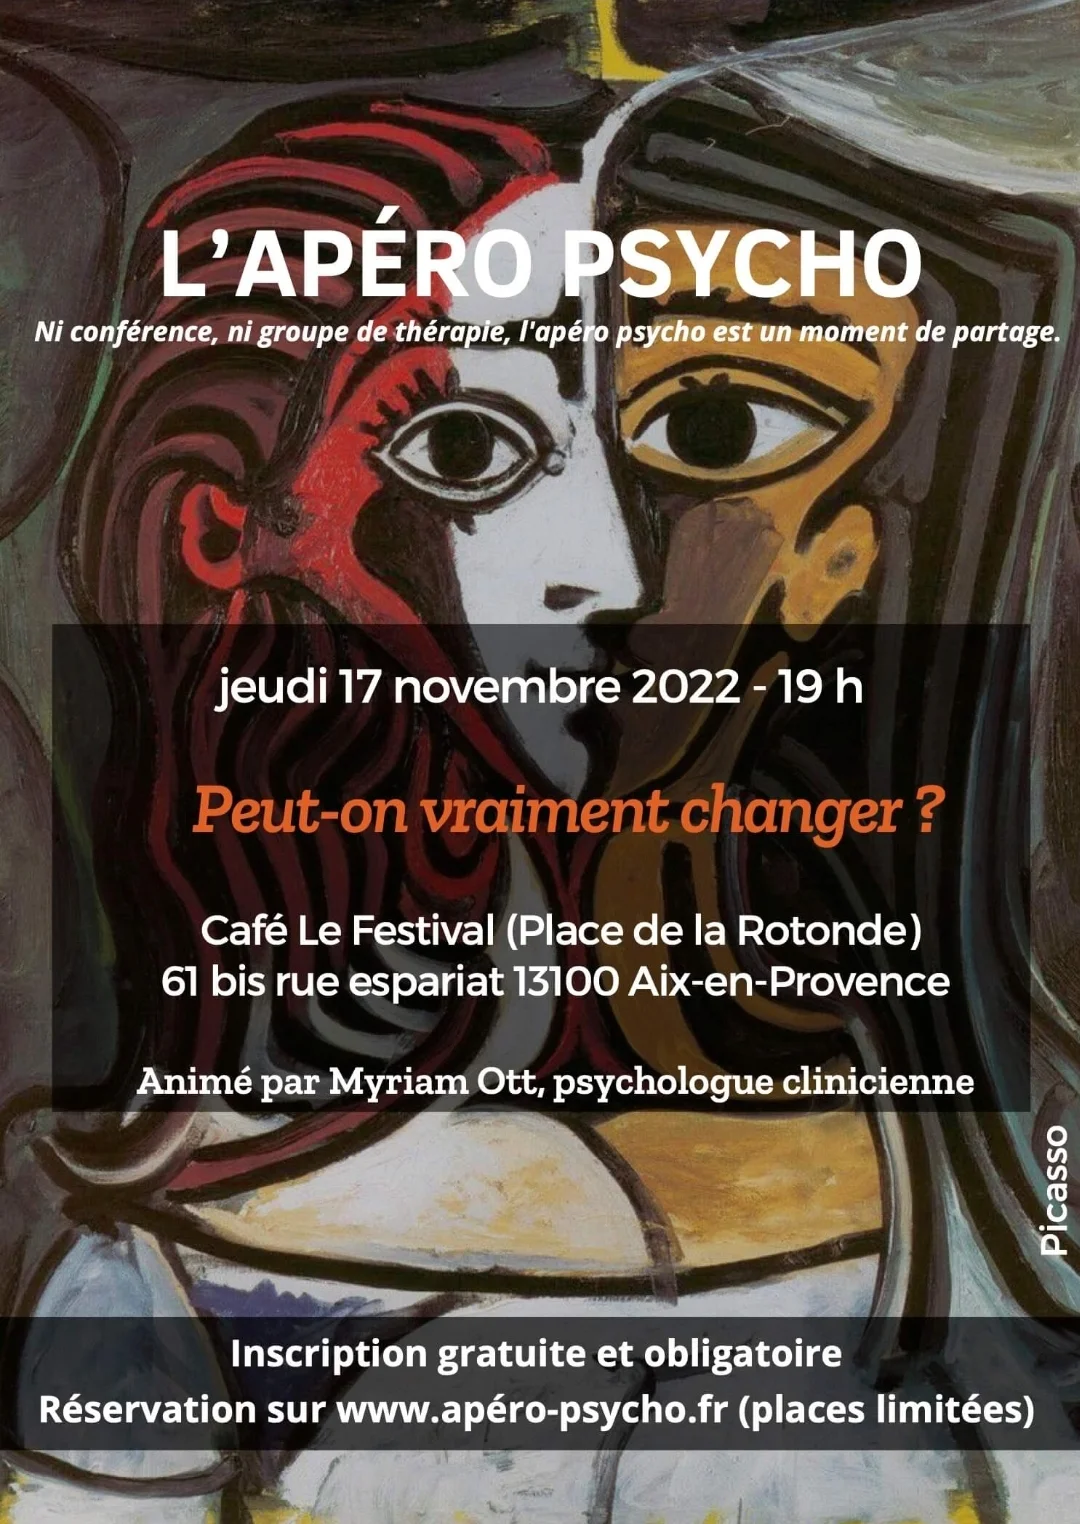 Apéro Psycho 17 novembre 2022 - Eguilles - Aix-en-Provence